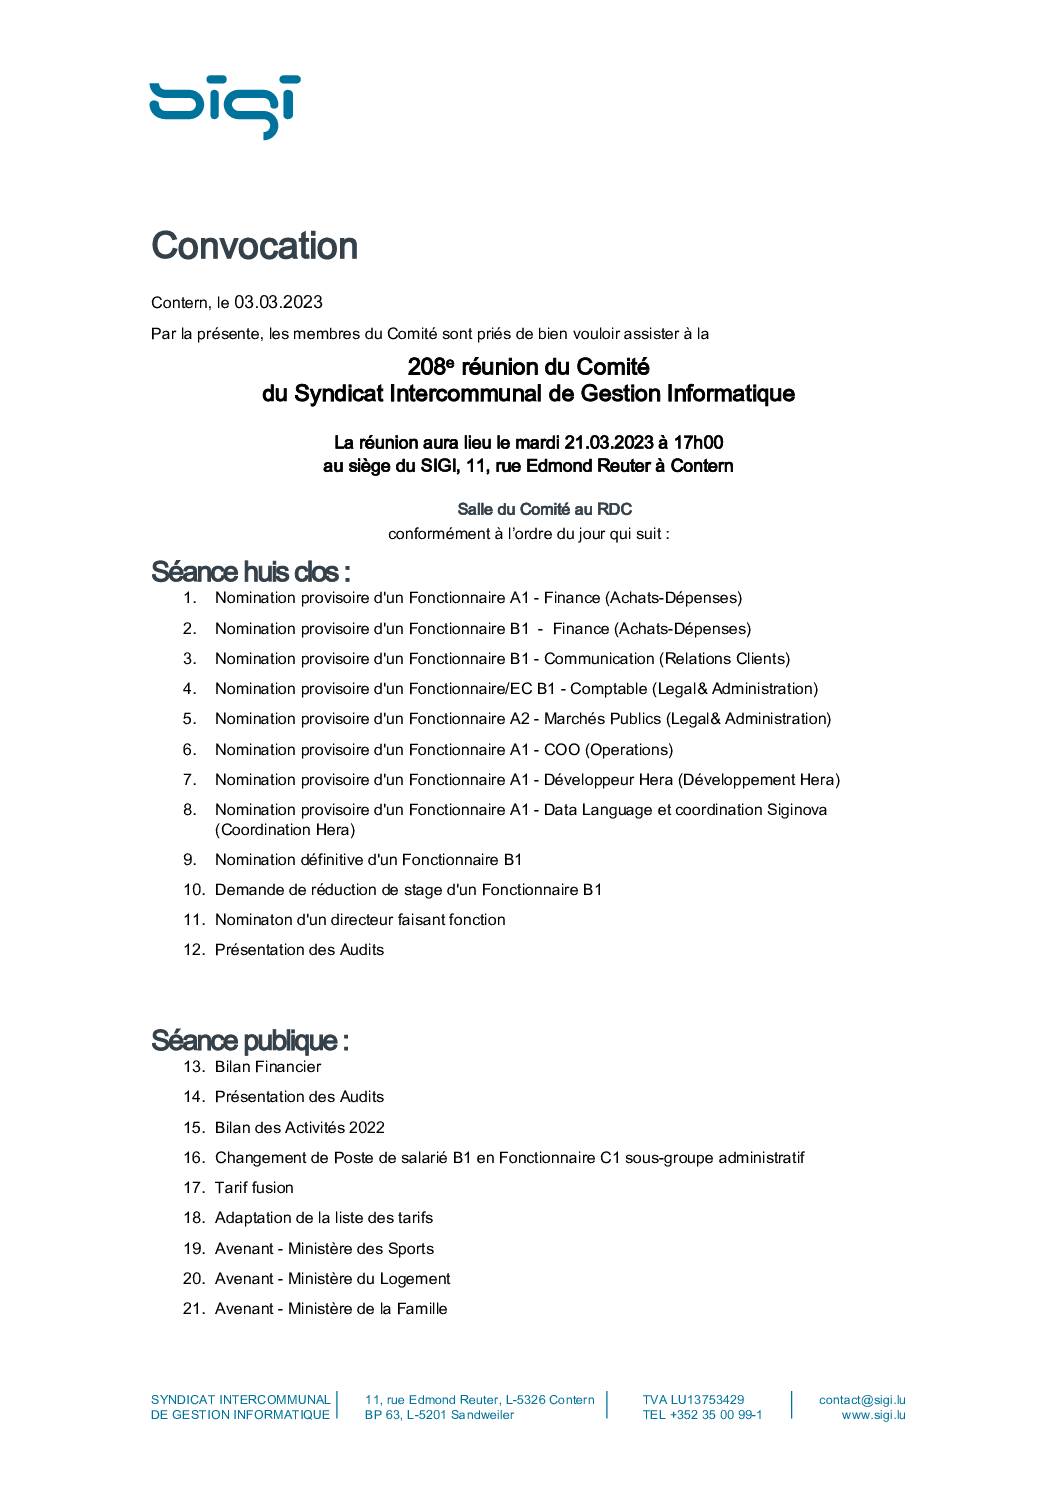 Convocation comité SIGI 21.03.2023